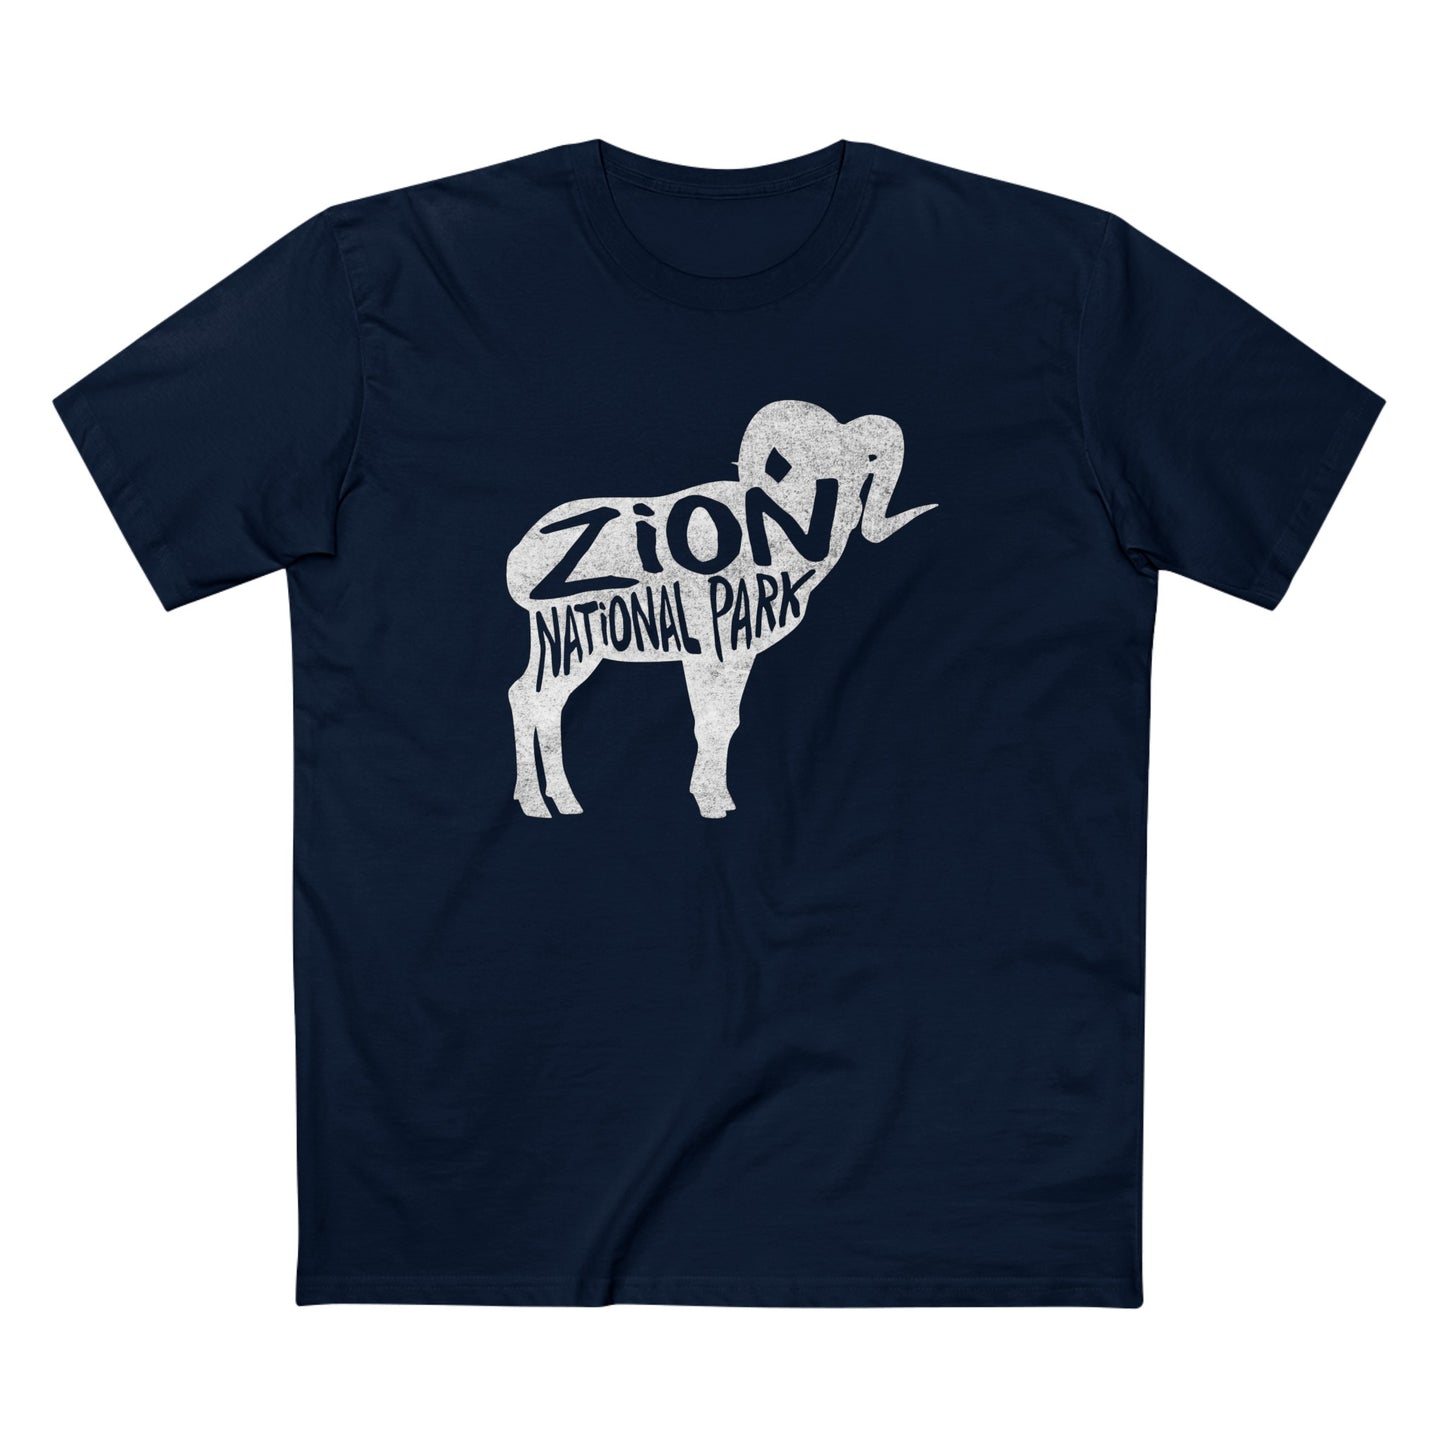 Zion National Park T-Shirt - Bighorn Sheep